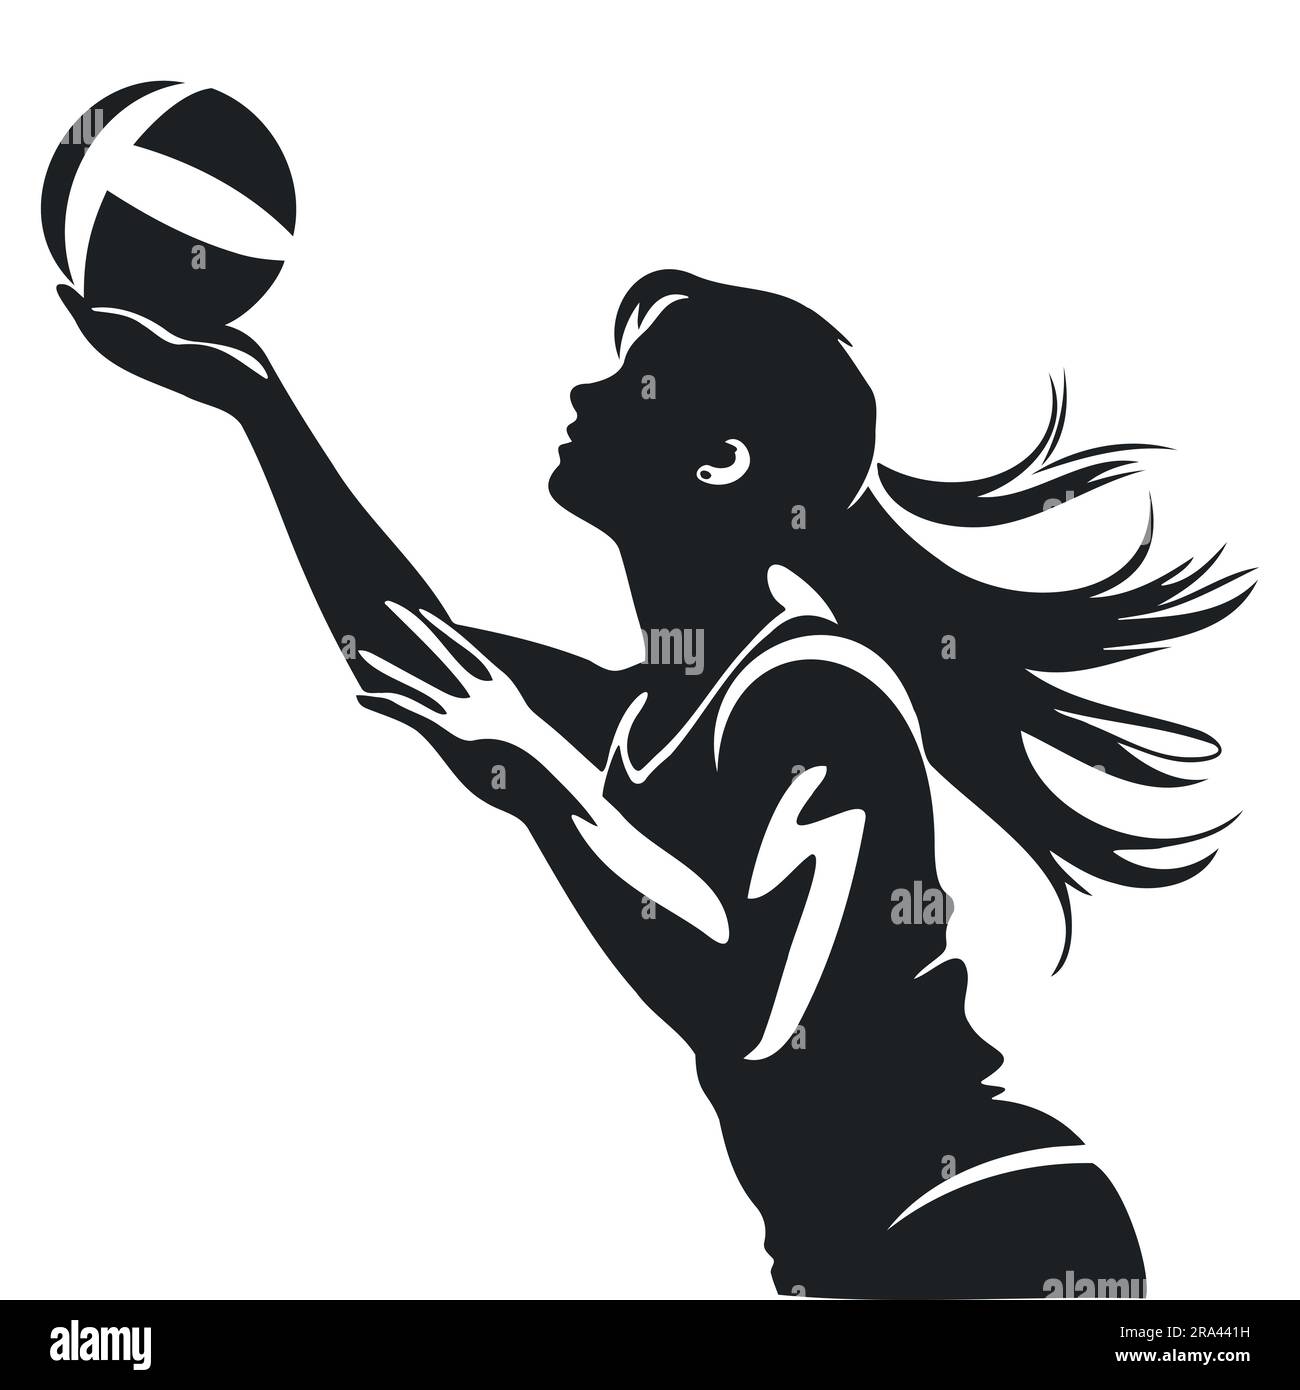 La silhouette vettoriale di una ragazza con una palla gioca a pallavolo Illustrazione Vettoriale